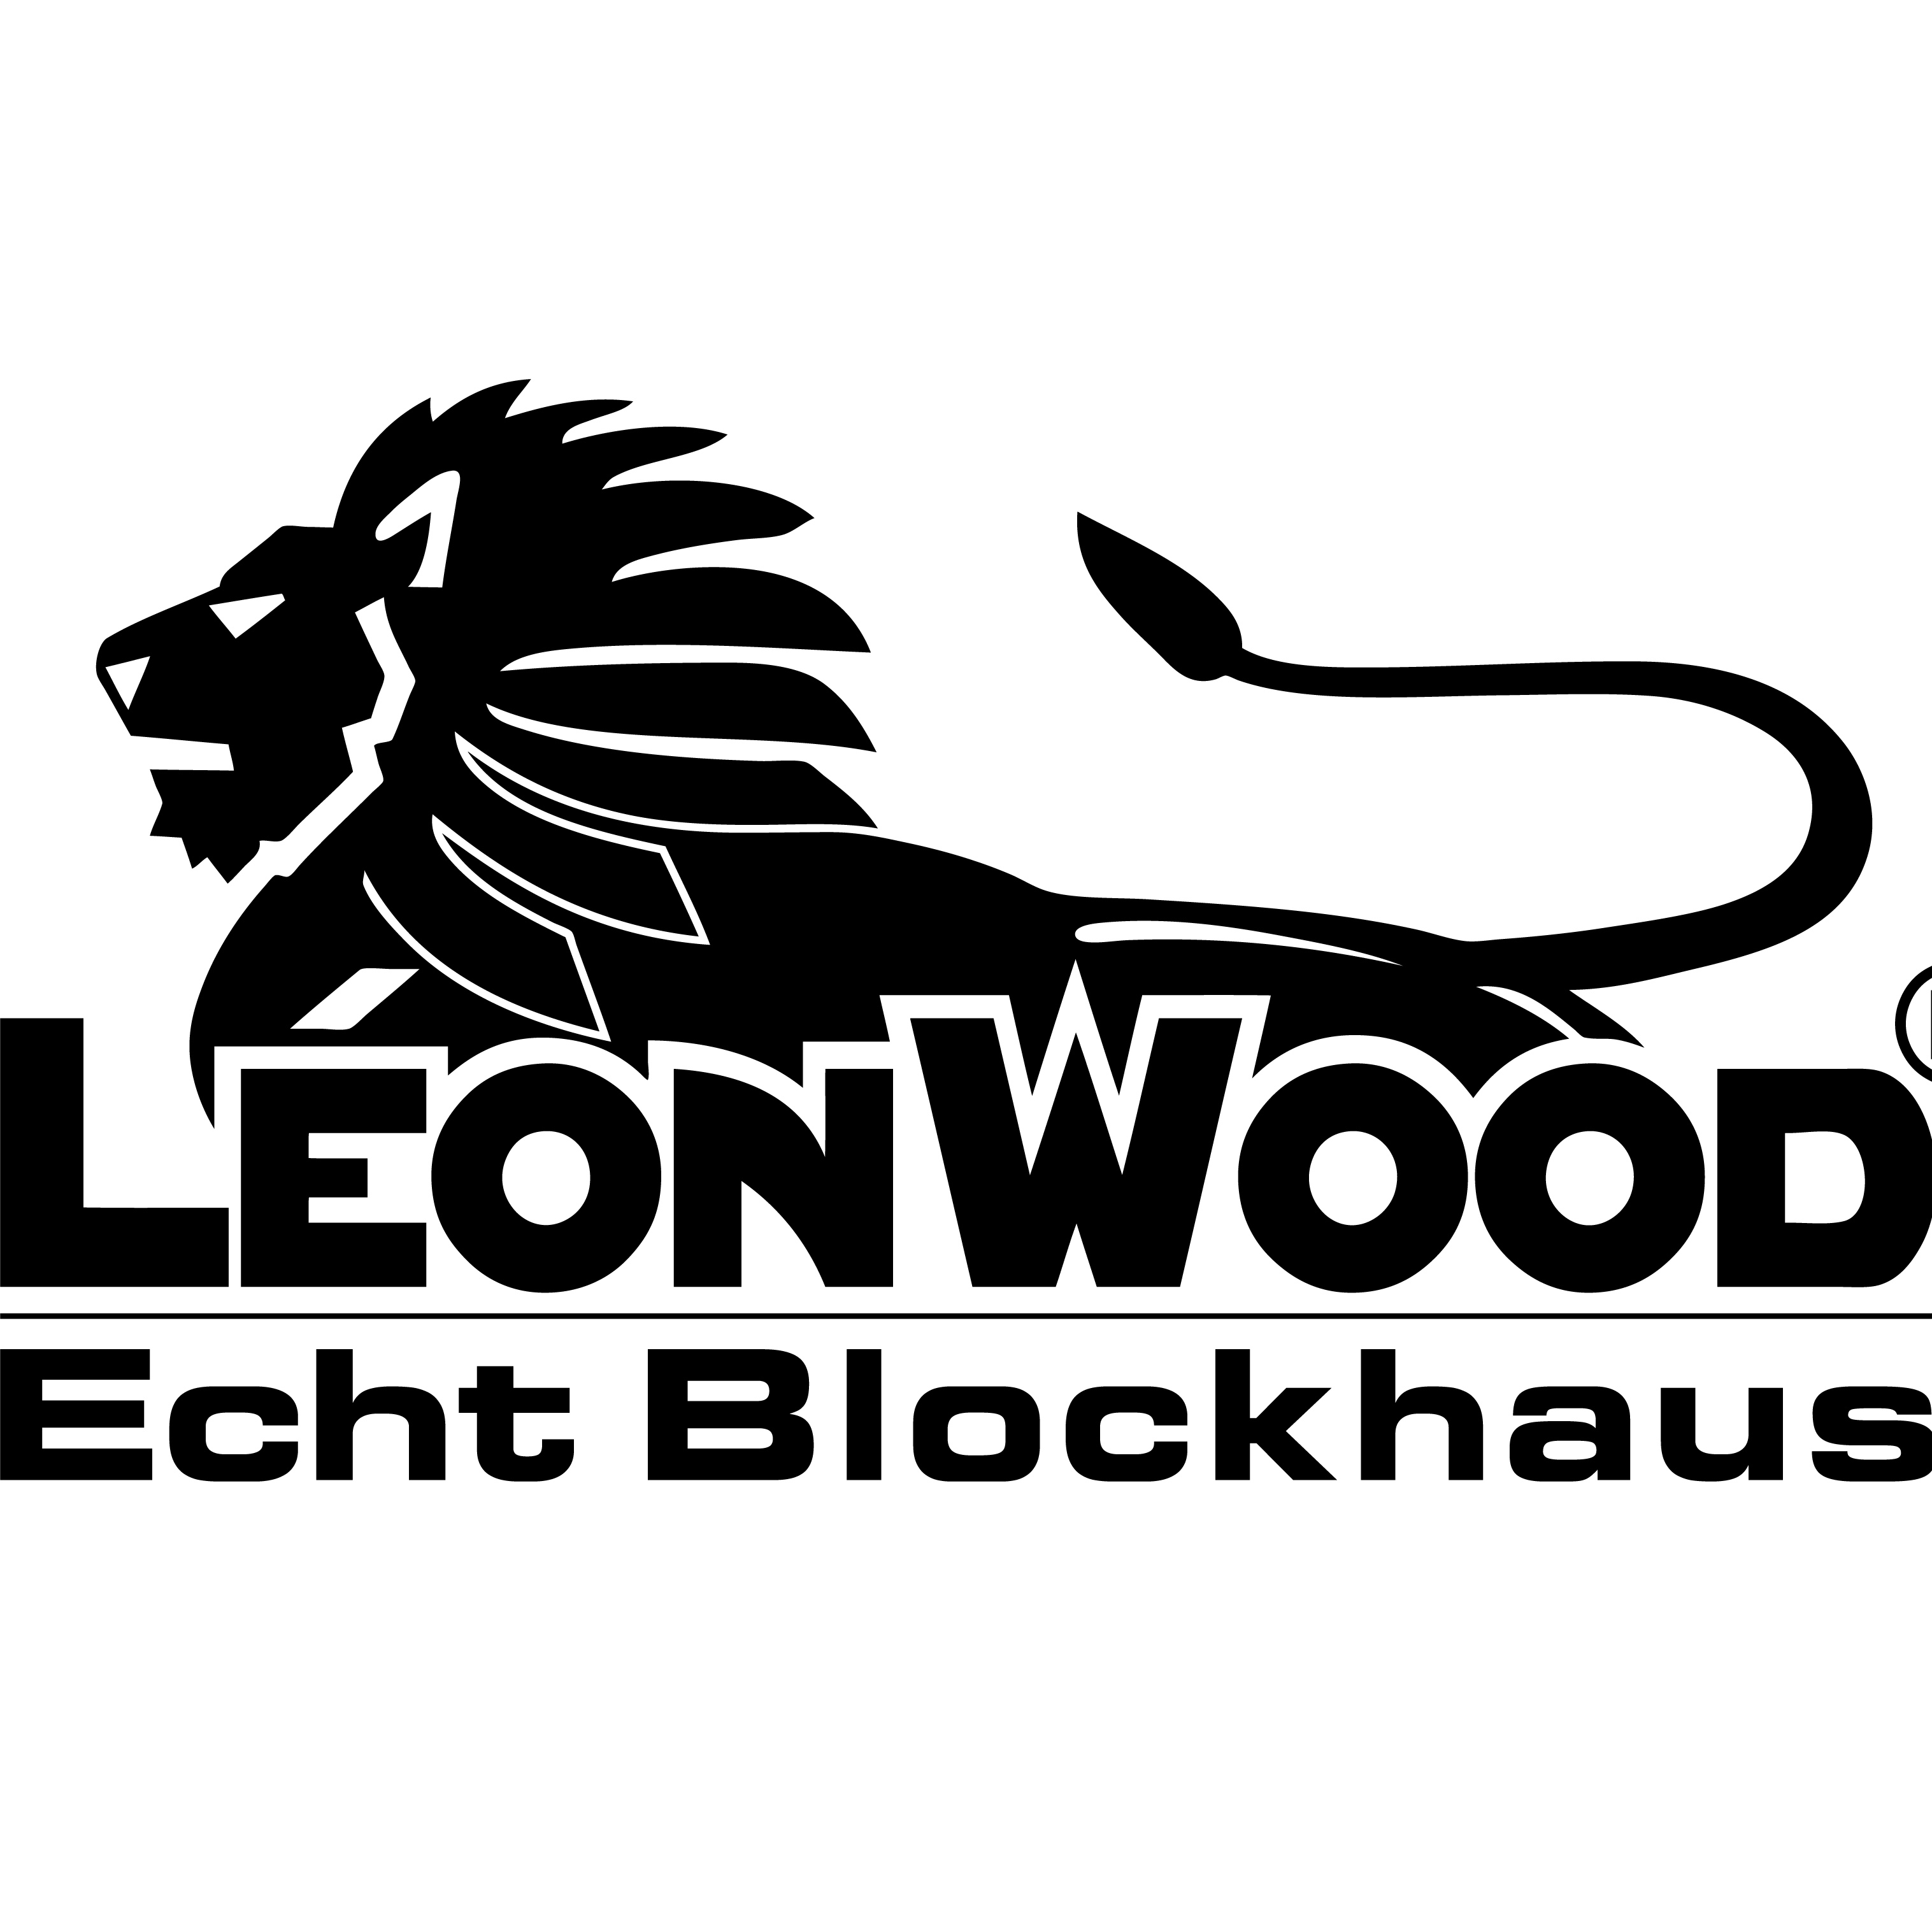 Logo LéonWood Holz-Blockhaus GmbH